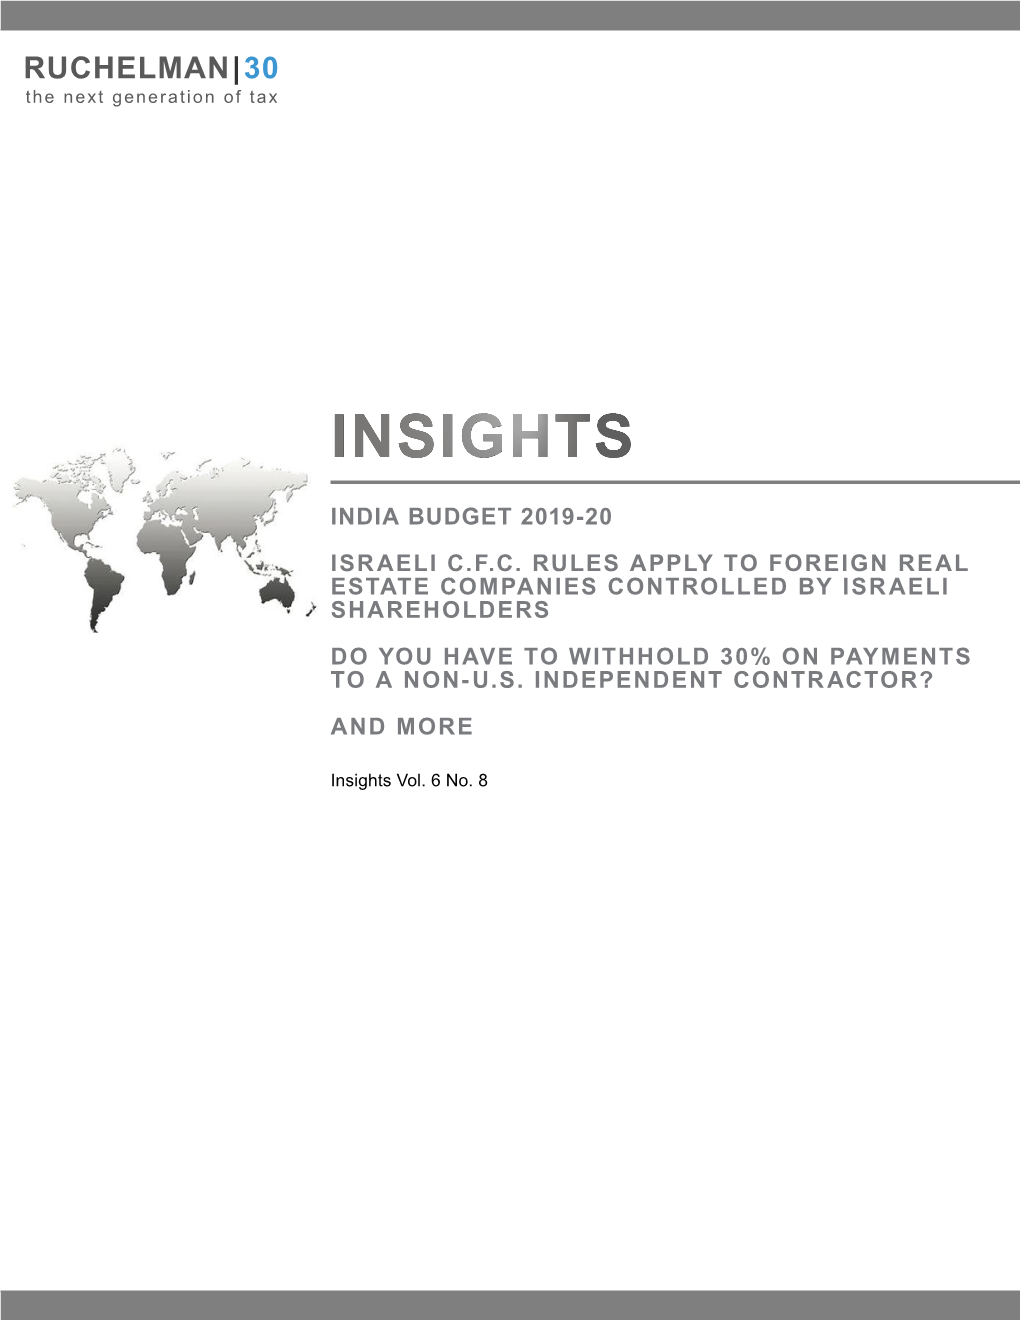 Insights – Vol. 6 No. 8